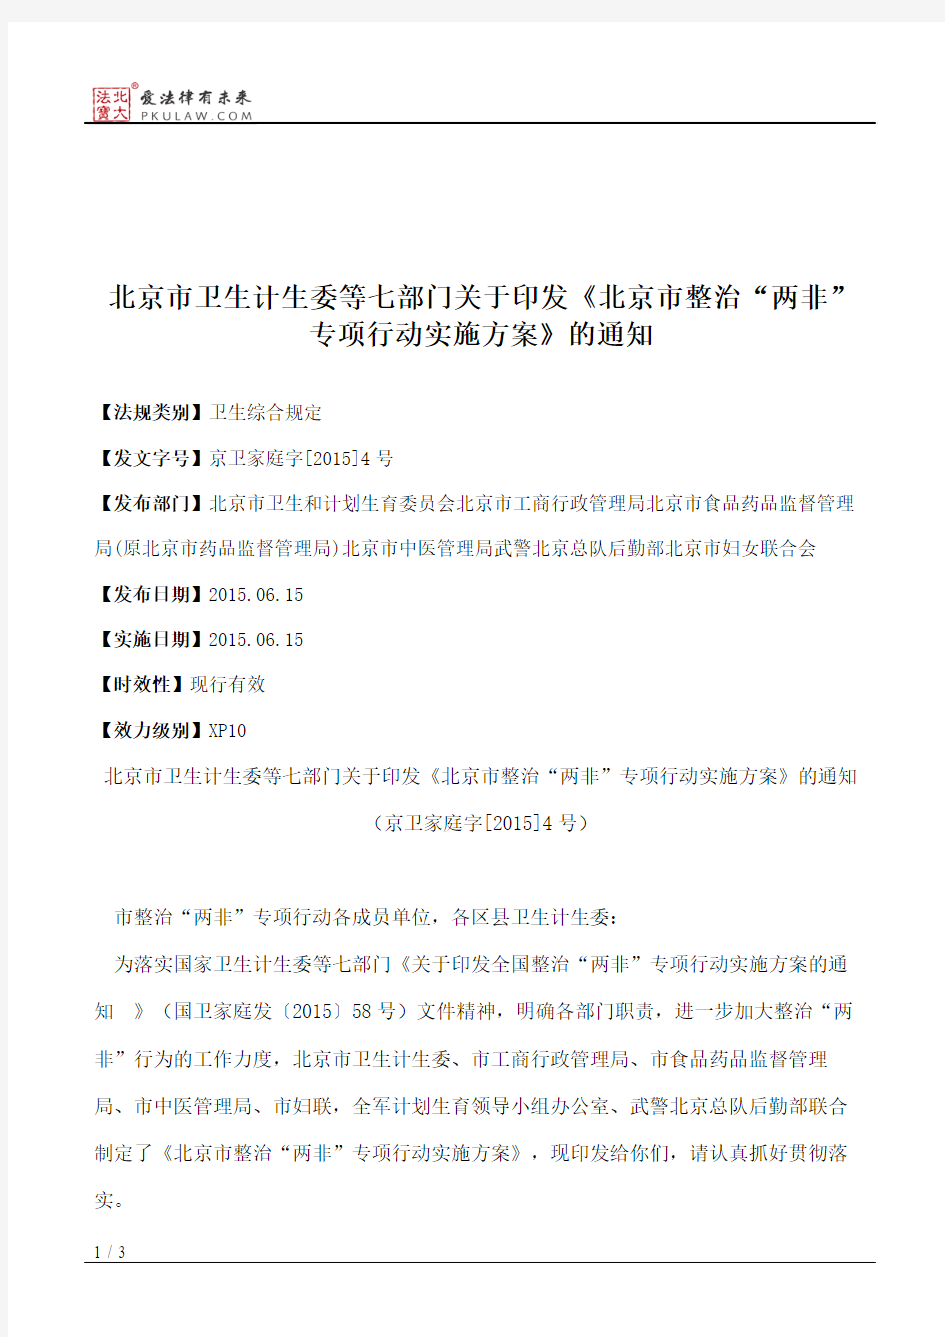 北京市卫生计生委等七部门关于印发《北京市整治“两非”专项行动